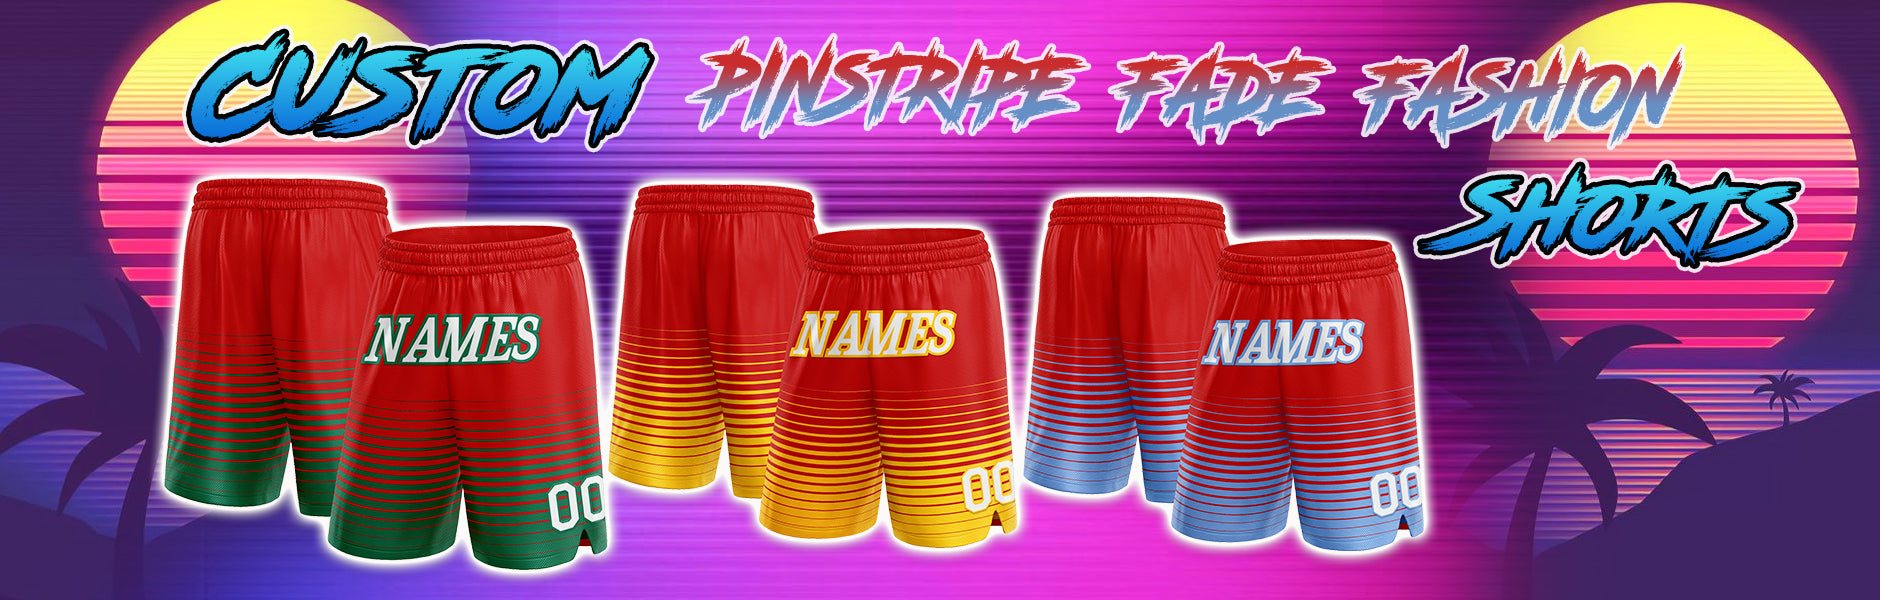 custom shorts pinstripe